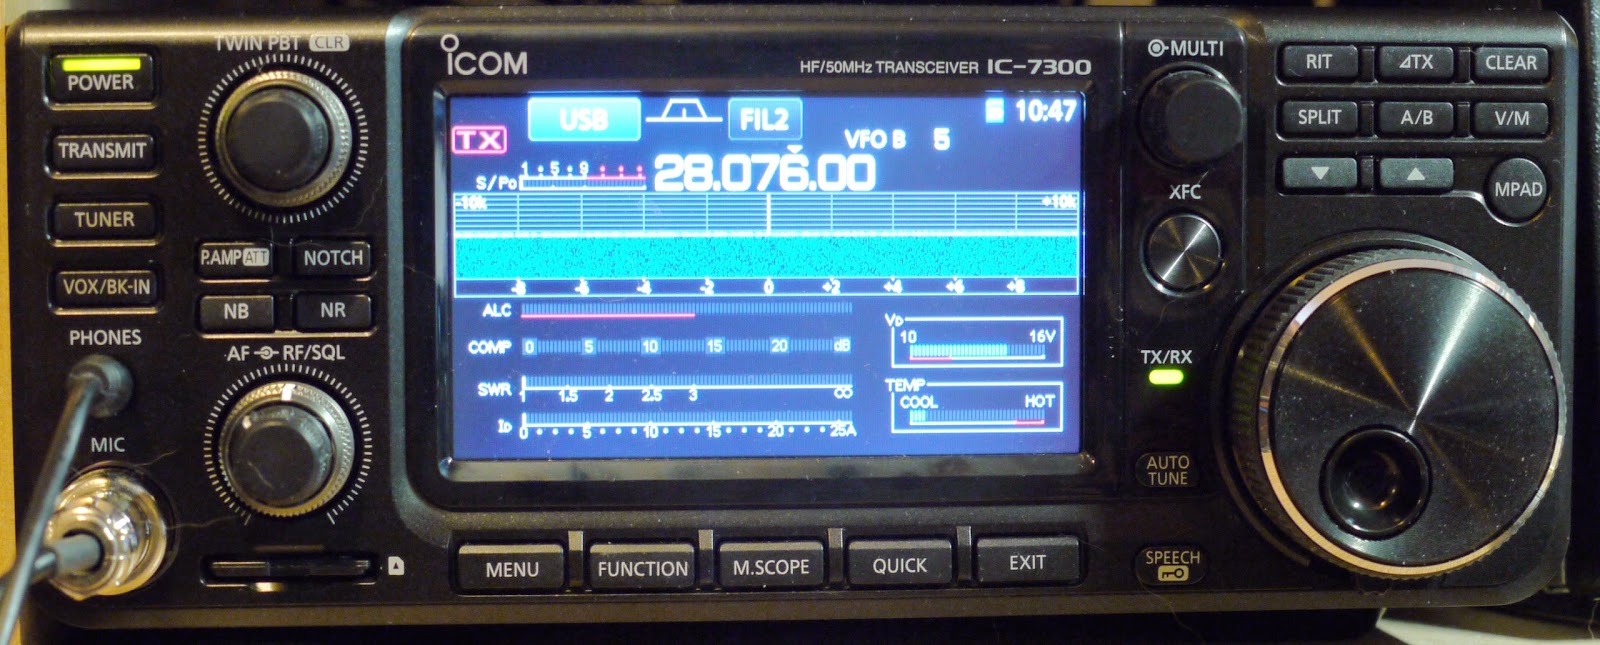 Comentarios y opiniones Icom IC-7300 emisora HF + 50 MHz + 70 MHz p